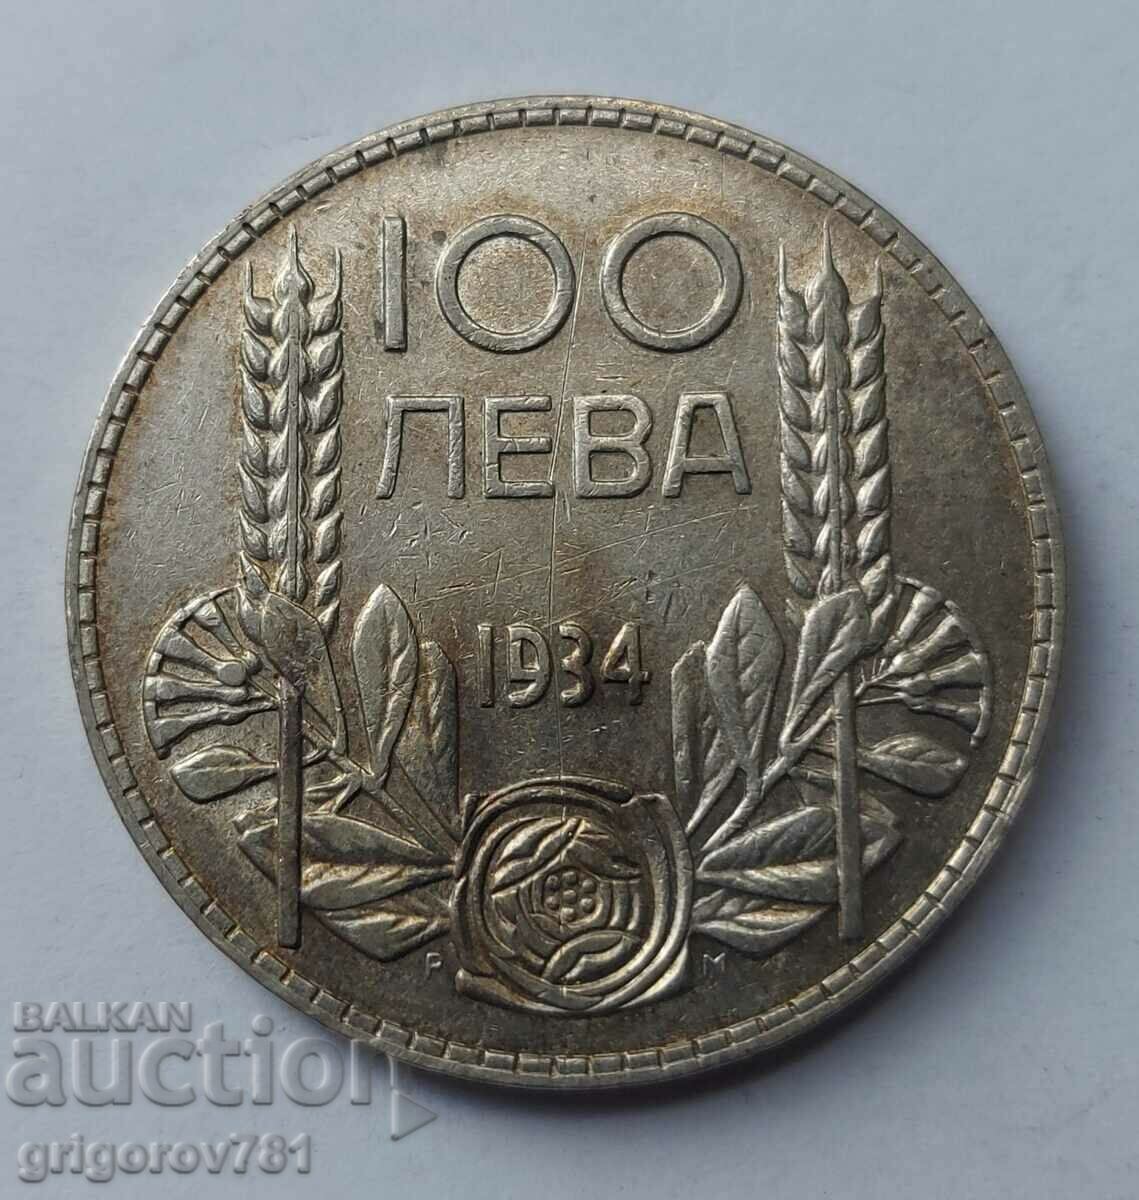 100 leva silver Bulgaria 1934 - silver coin #42